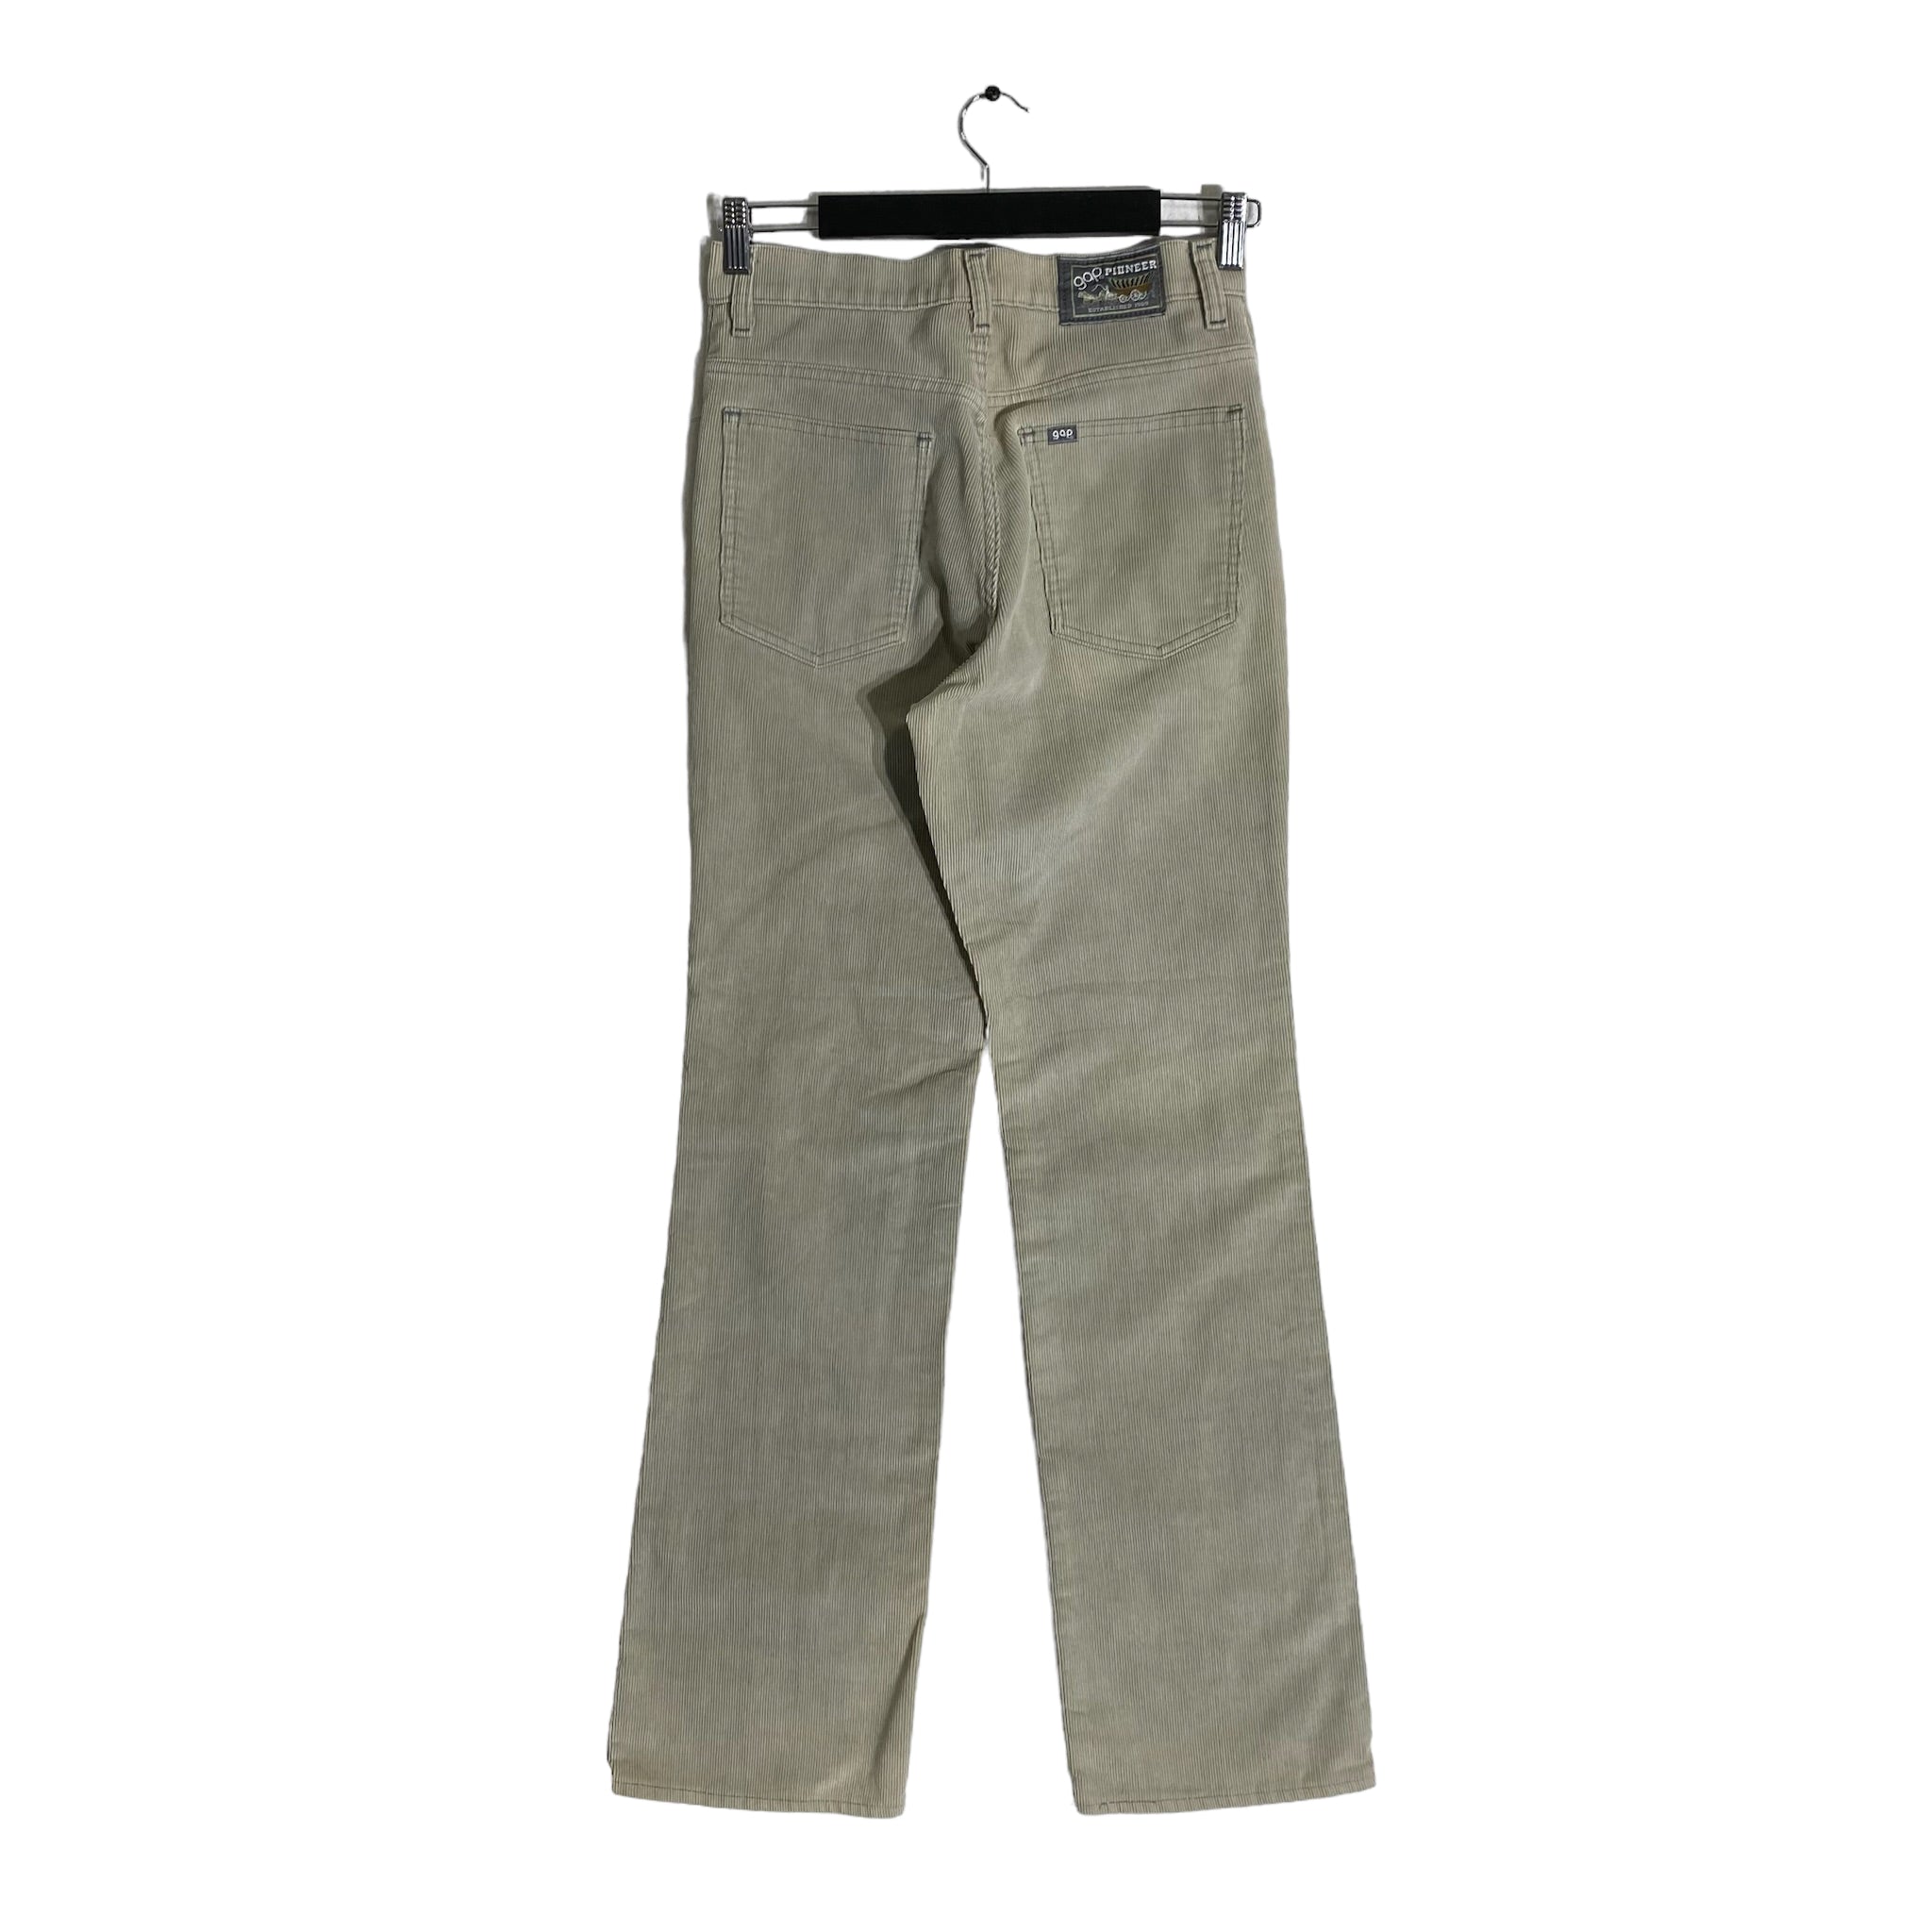 Vintage GAP Pioneer Beige Corduroy Trousers